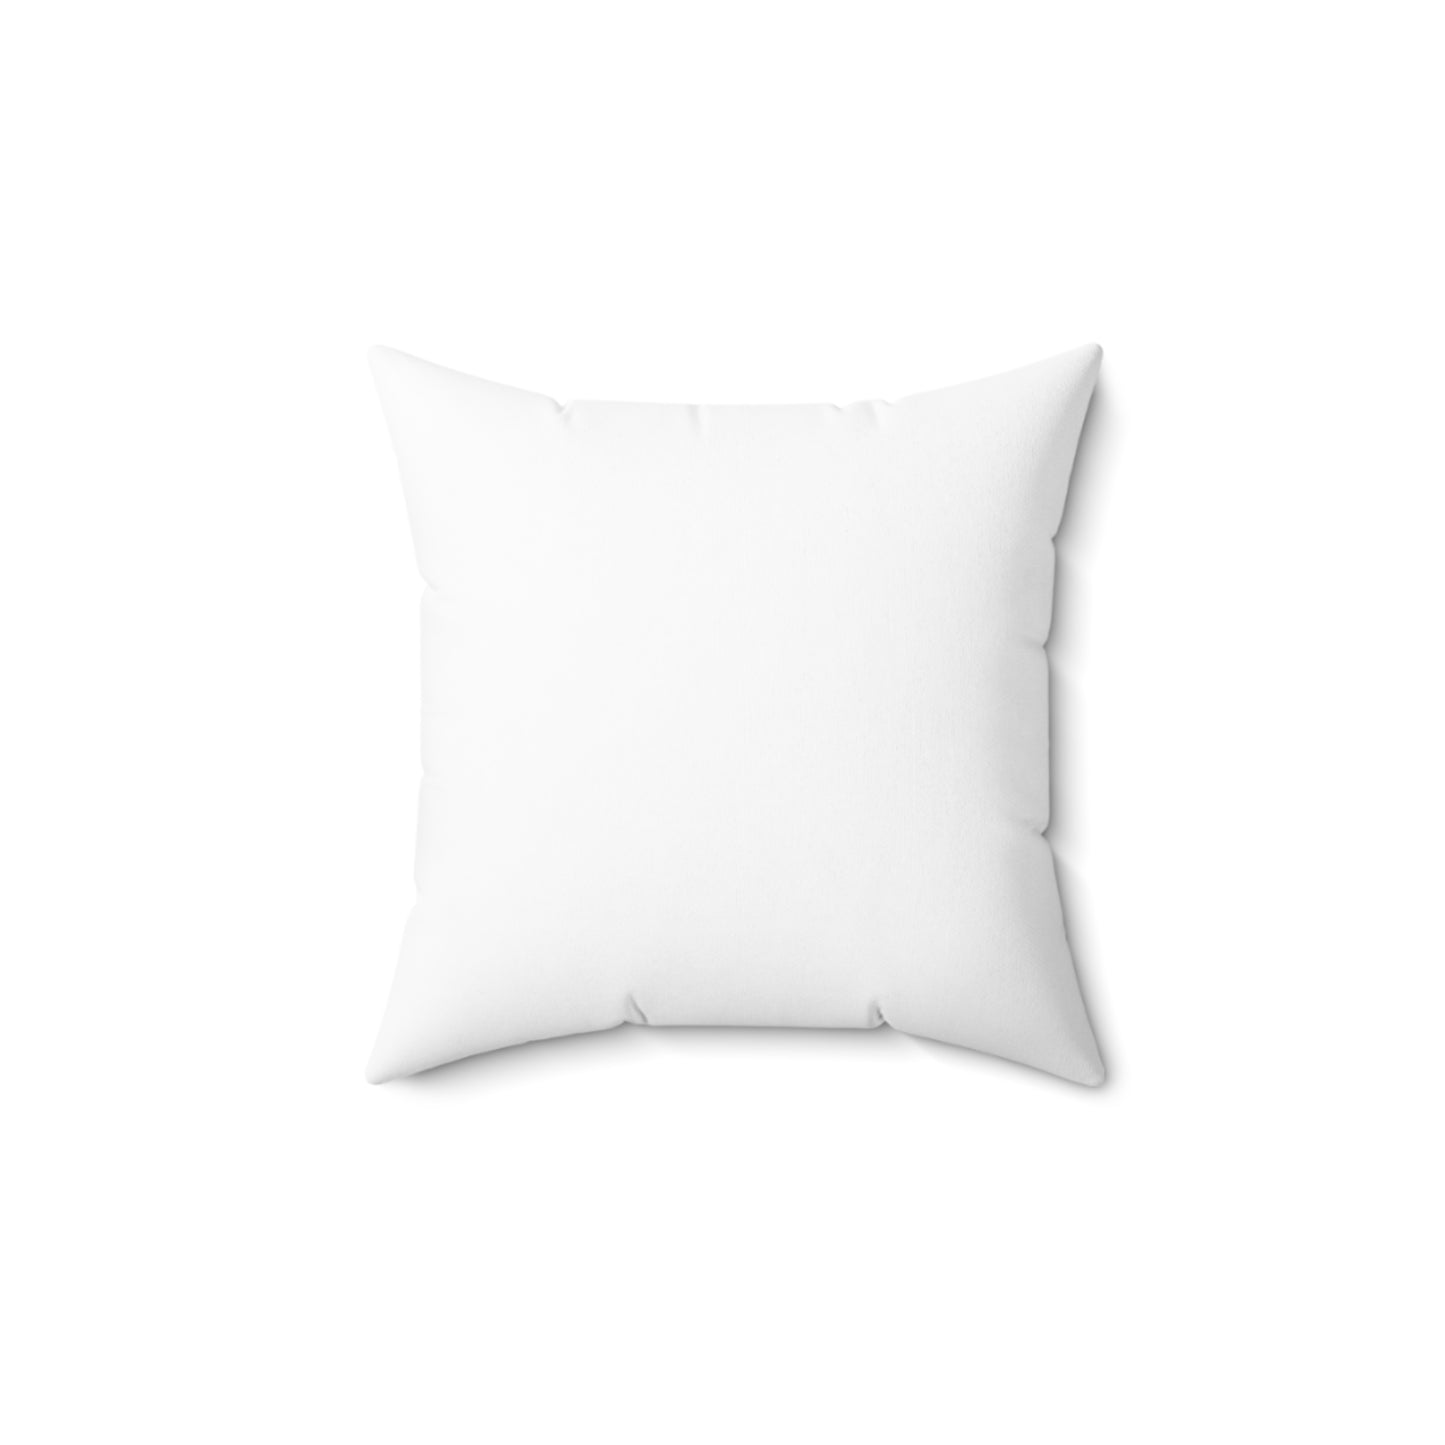 Indoor decorative cushion- Scotland Design